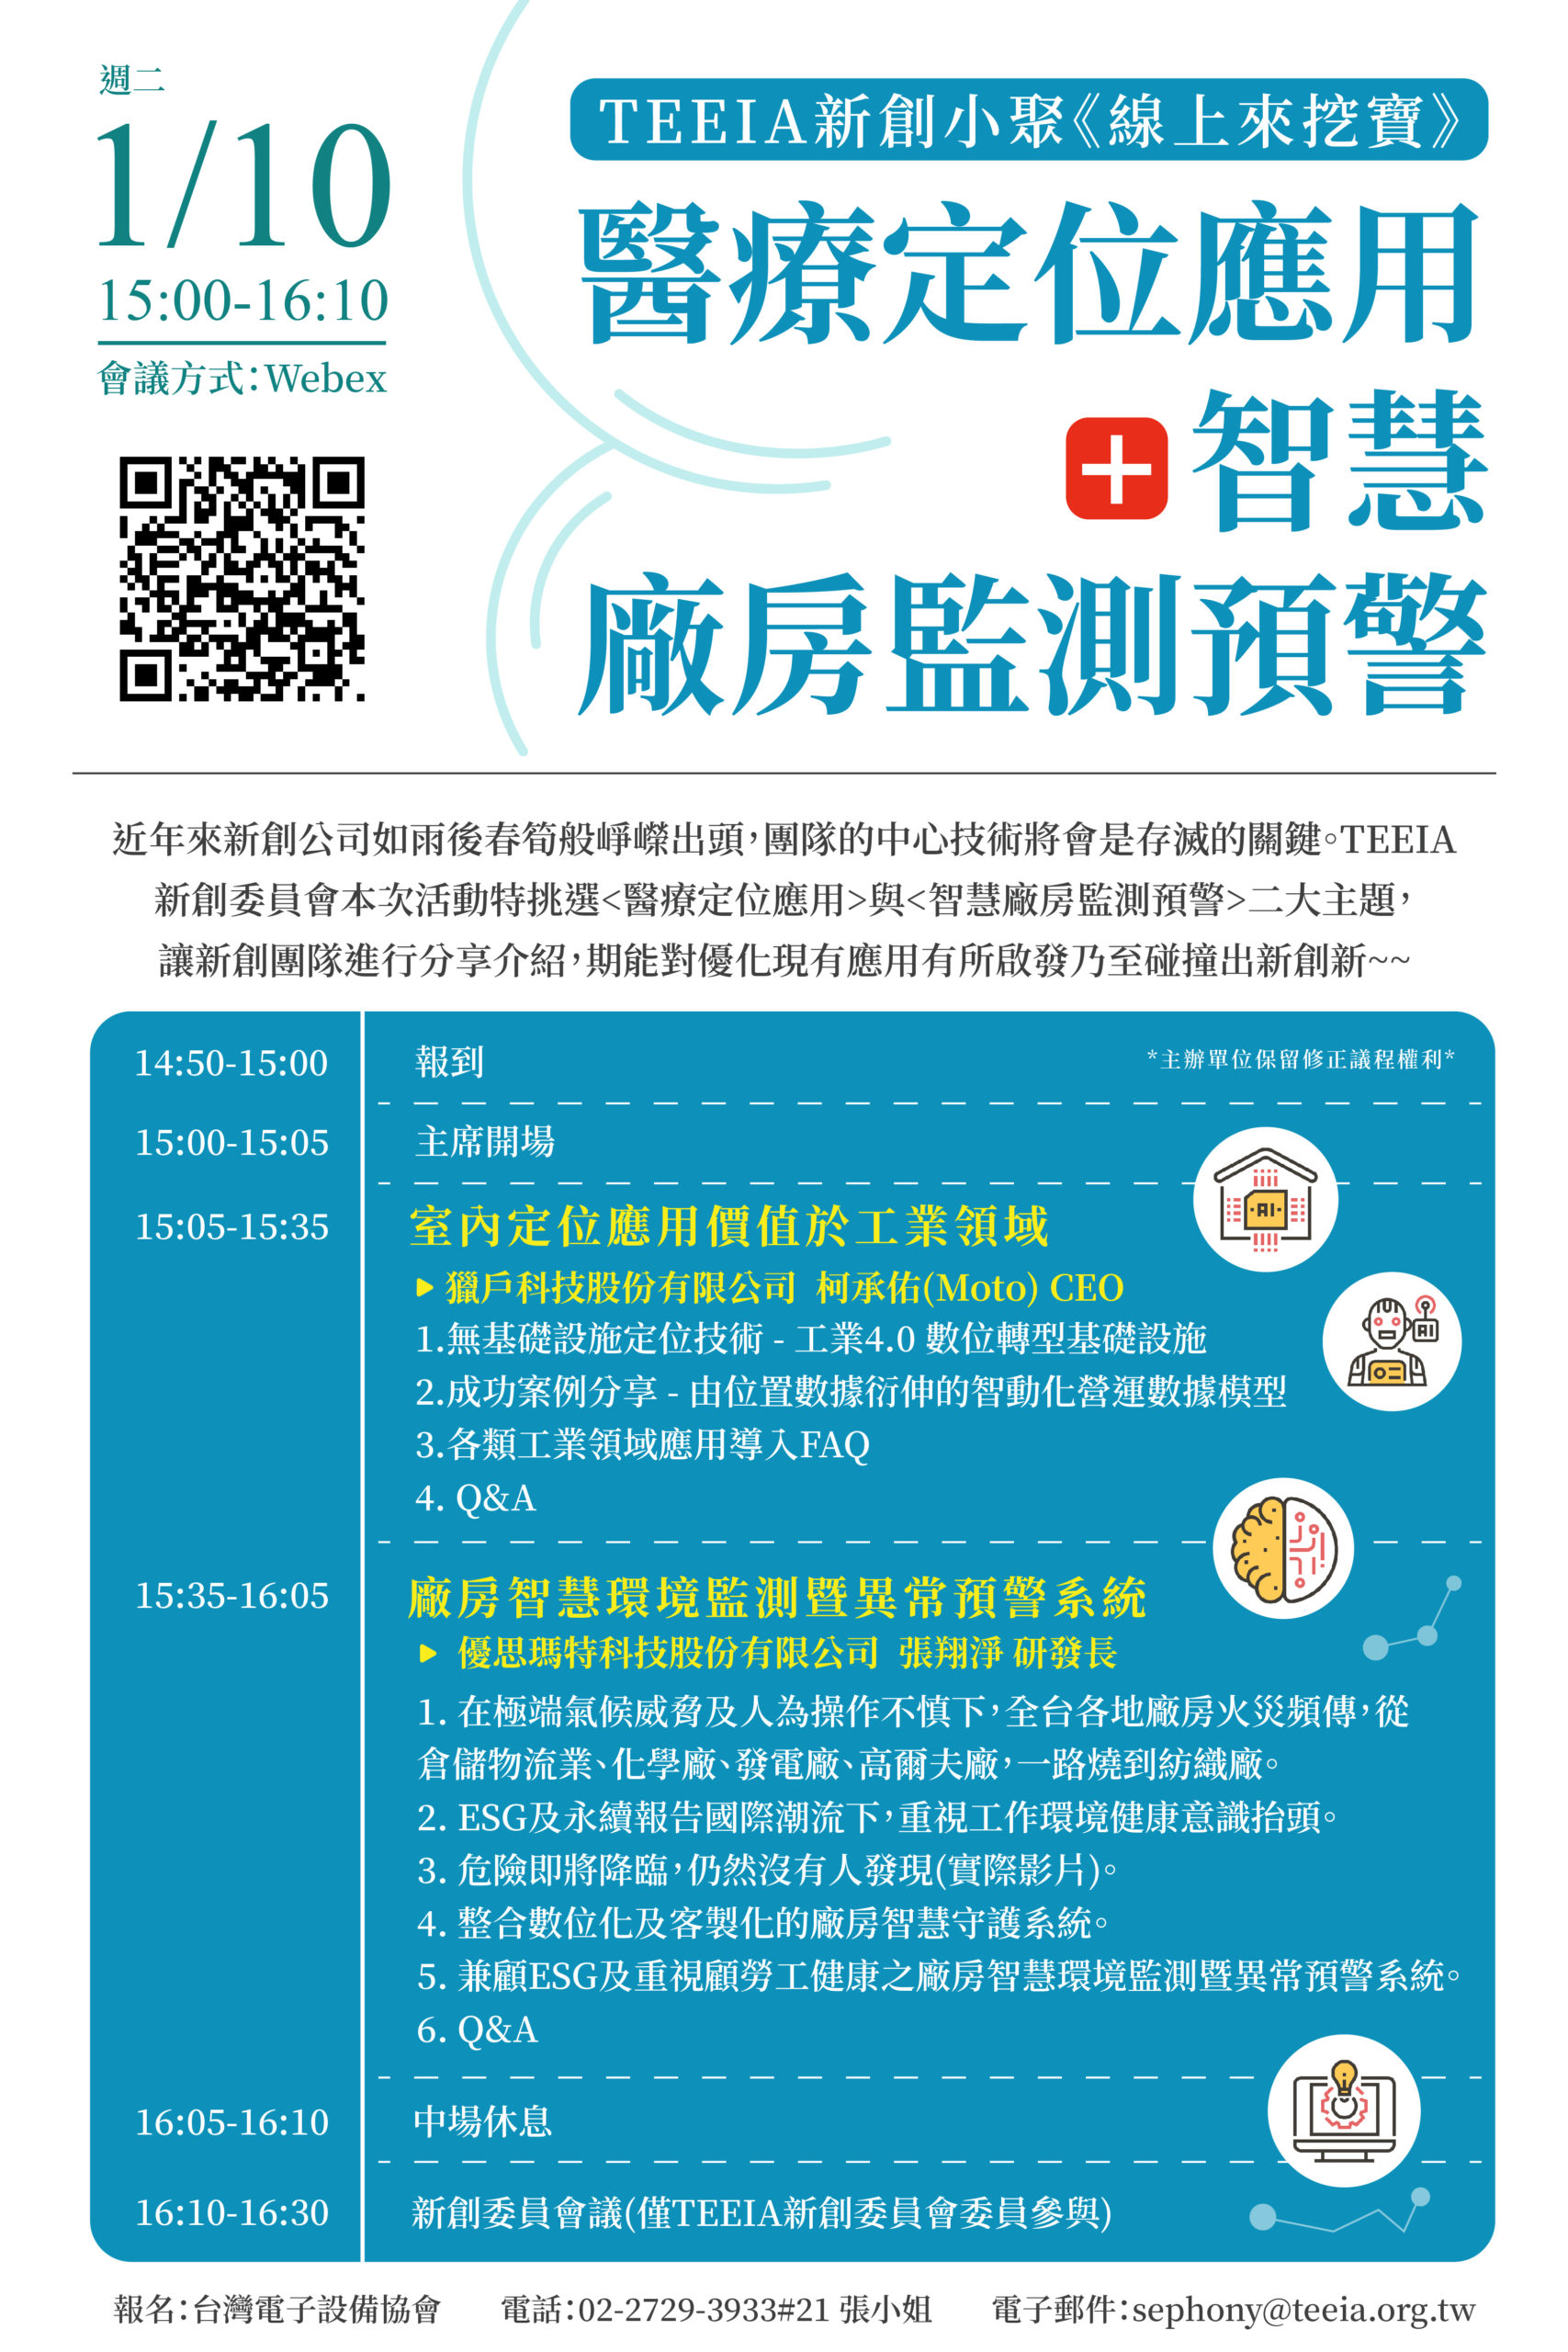 榮獲台灣電子設備協會新創委員會邀請，參加TEEIA新創小聚「線上來挖寶」活動